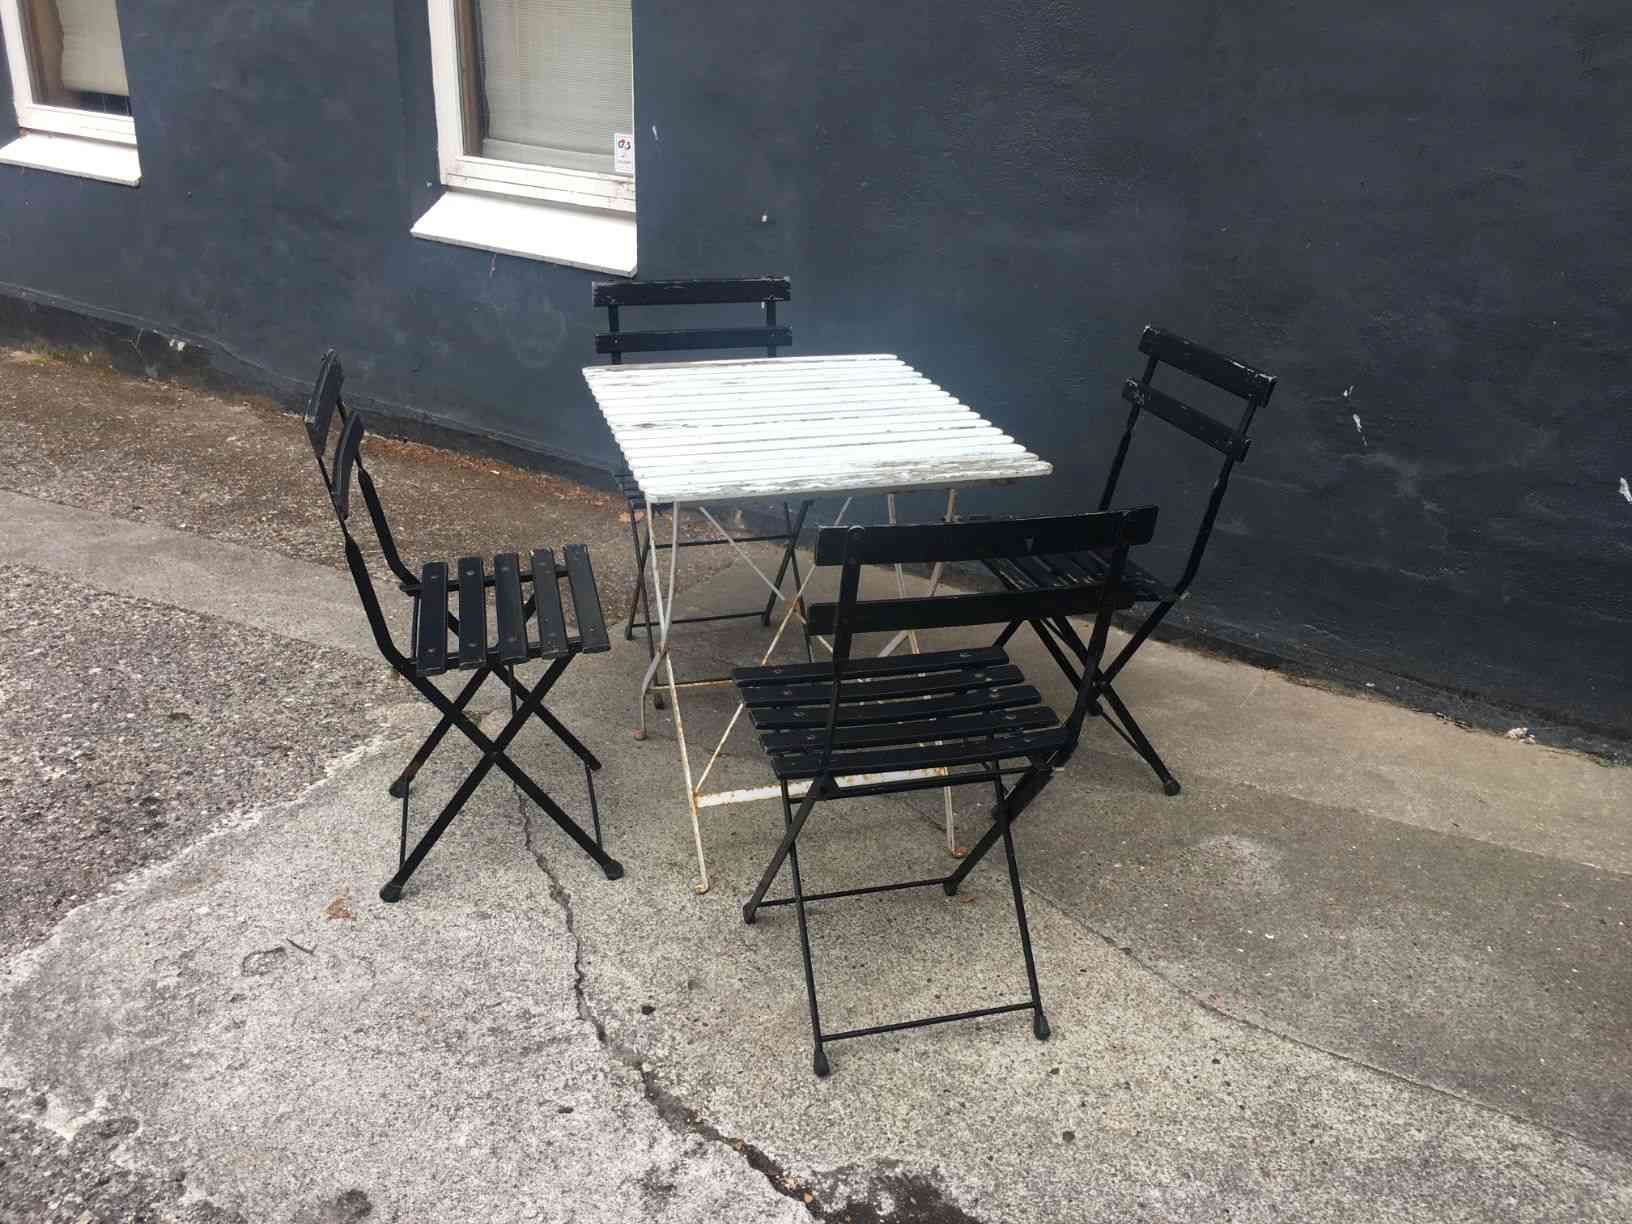 Vintage cafébord med 4 stole i flot rustik og patineret stand. Alt kan klappes sammen for at stille væk om efteråret. Stel af bemalet metal påsat bemalet træ. Solgt